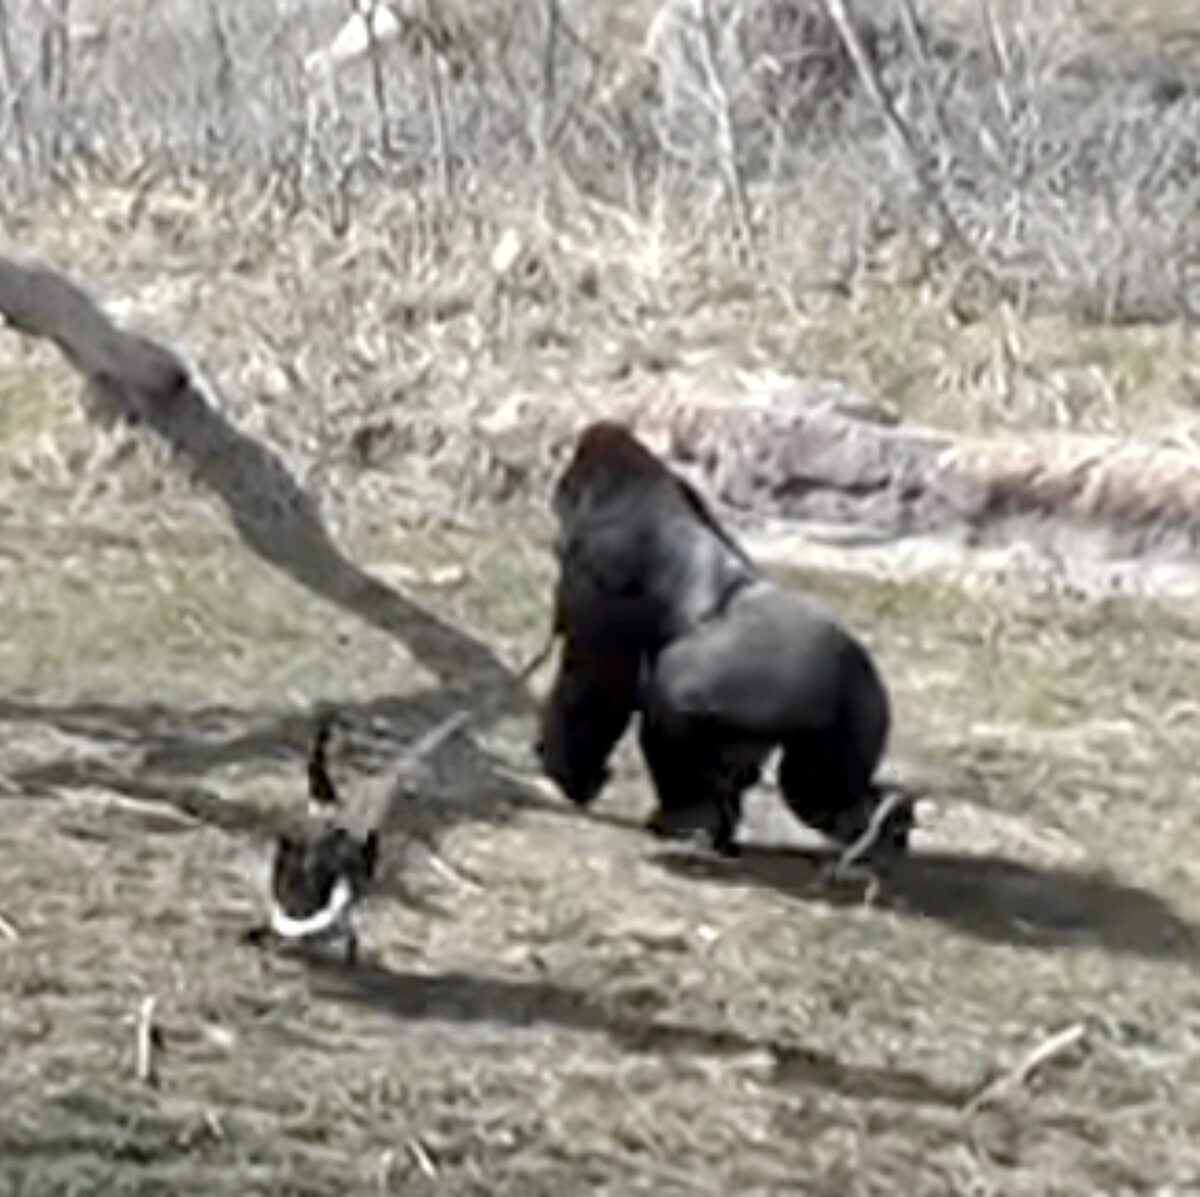 Goose attacks gorilla